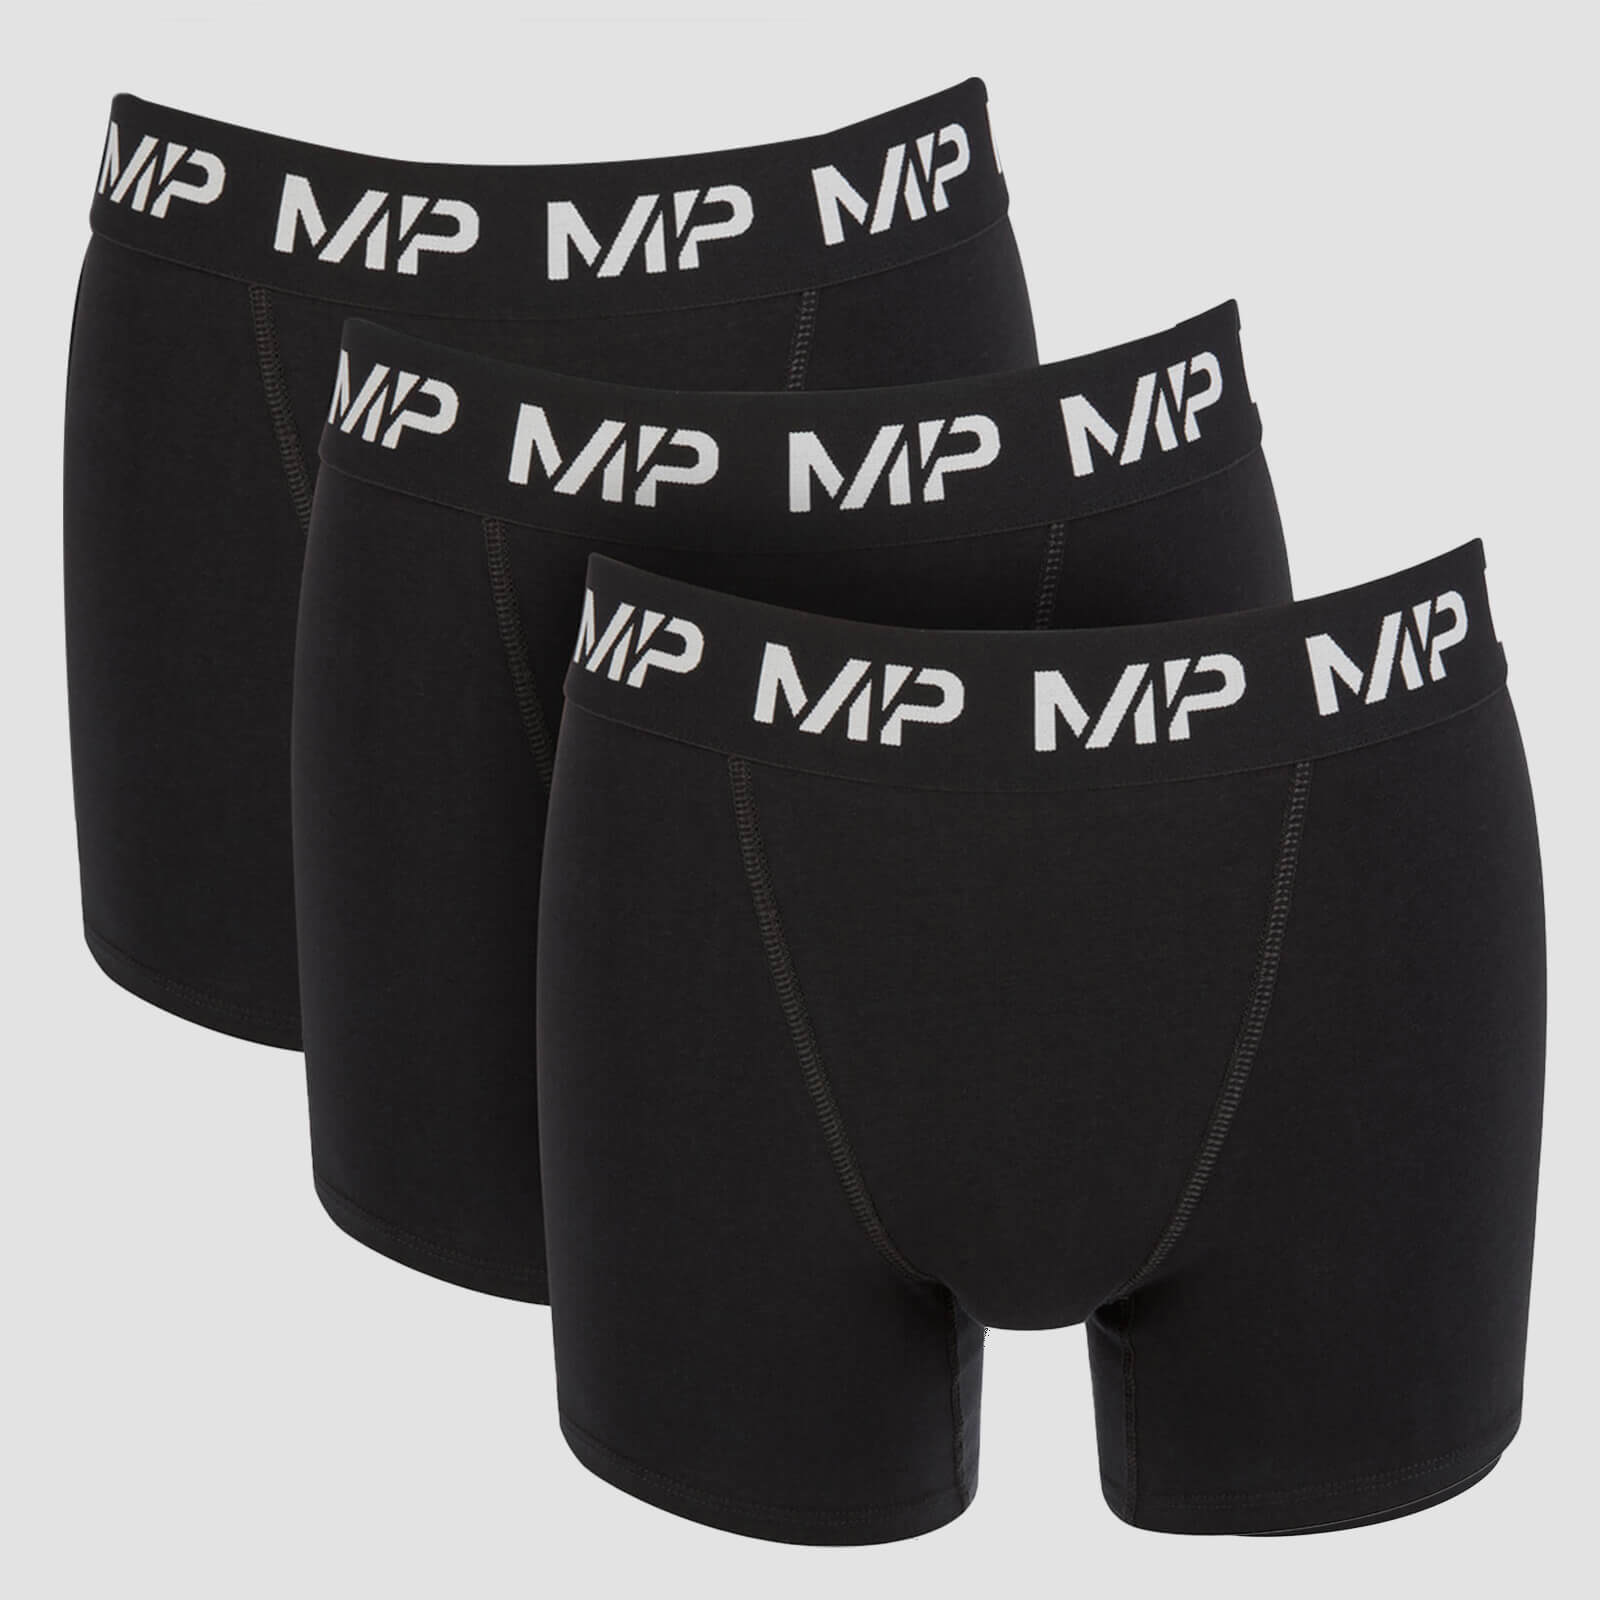 MP กางเกงในบ๊อกเซอร์ เอสเซนเชียลส์ สำหรับผู้ชาย - สีดำ (3 ตัว) - M